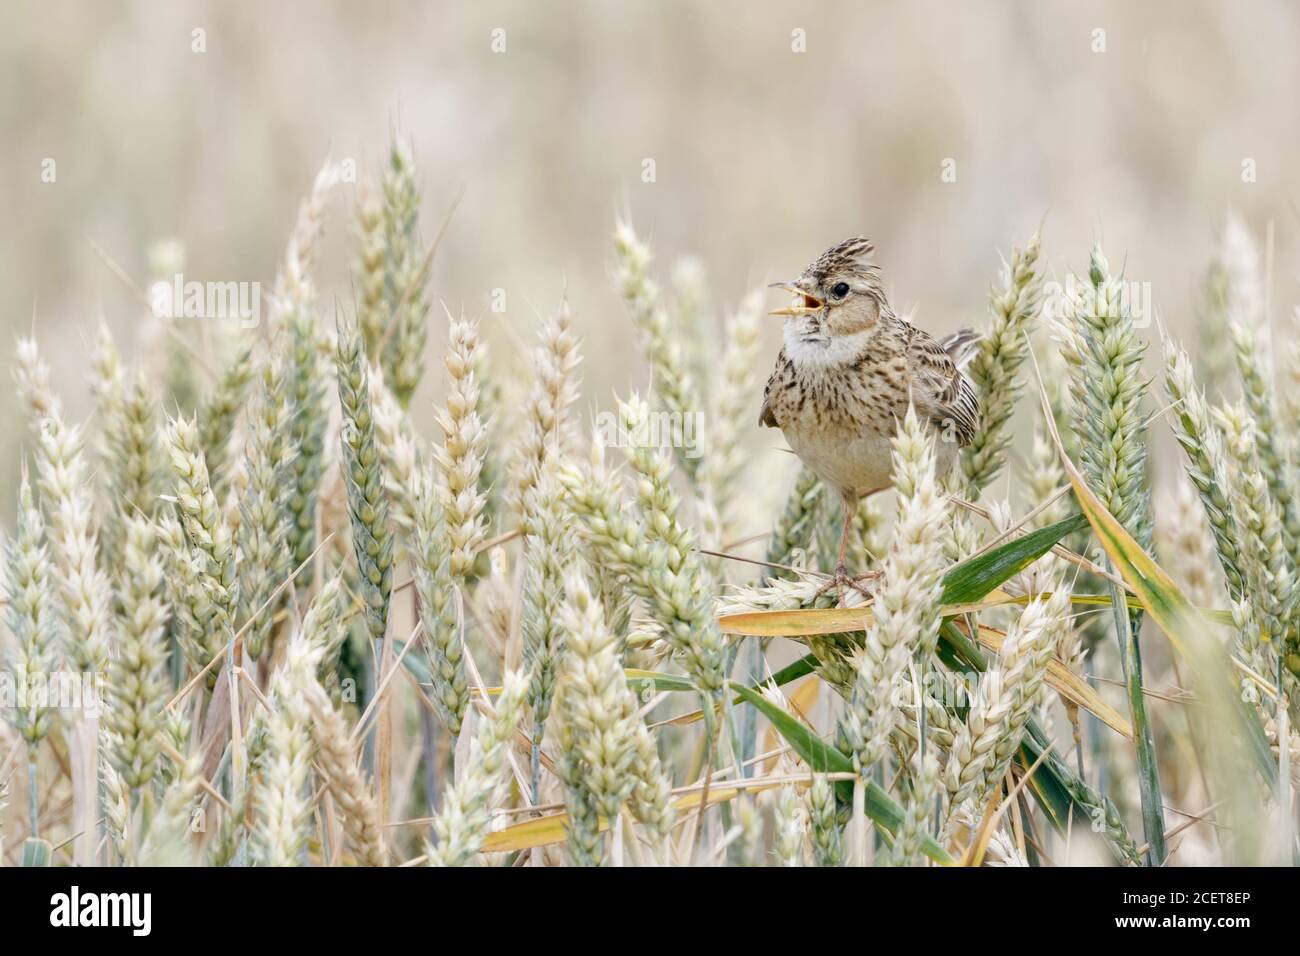 Skylark ( Alauda arvensis ) cantando en un campo de trigo, encaramado en cultivos de trigo, cresta elevada, típico pájaro cantero de tierra abierta, vida silvestre, Europa. Foto de stock